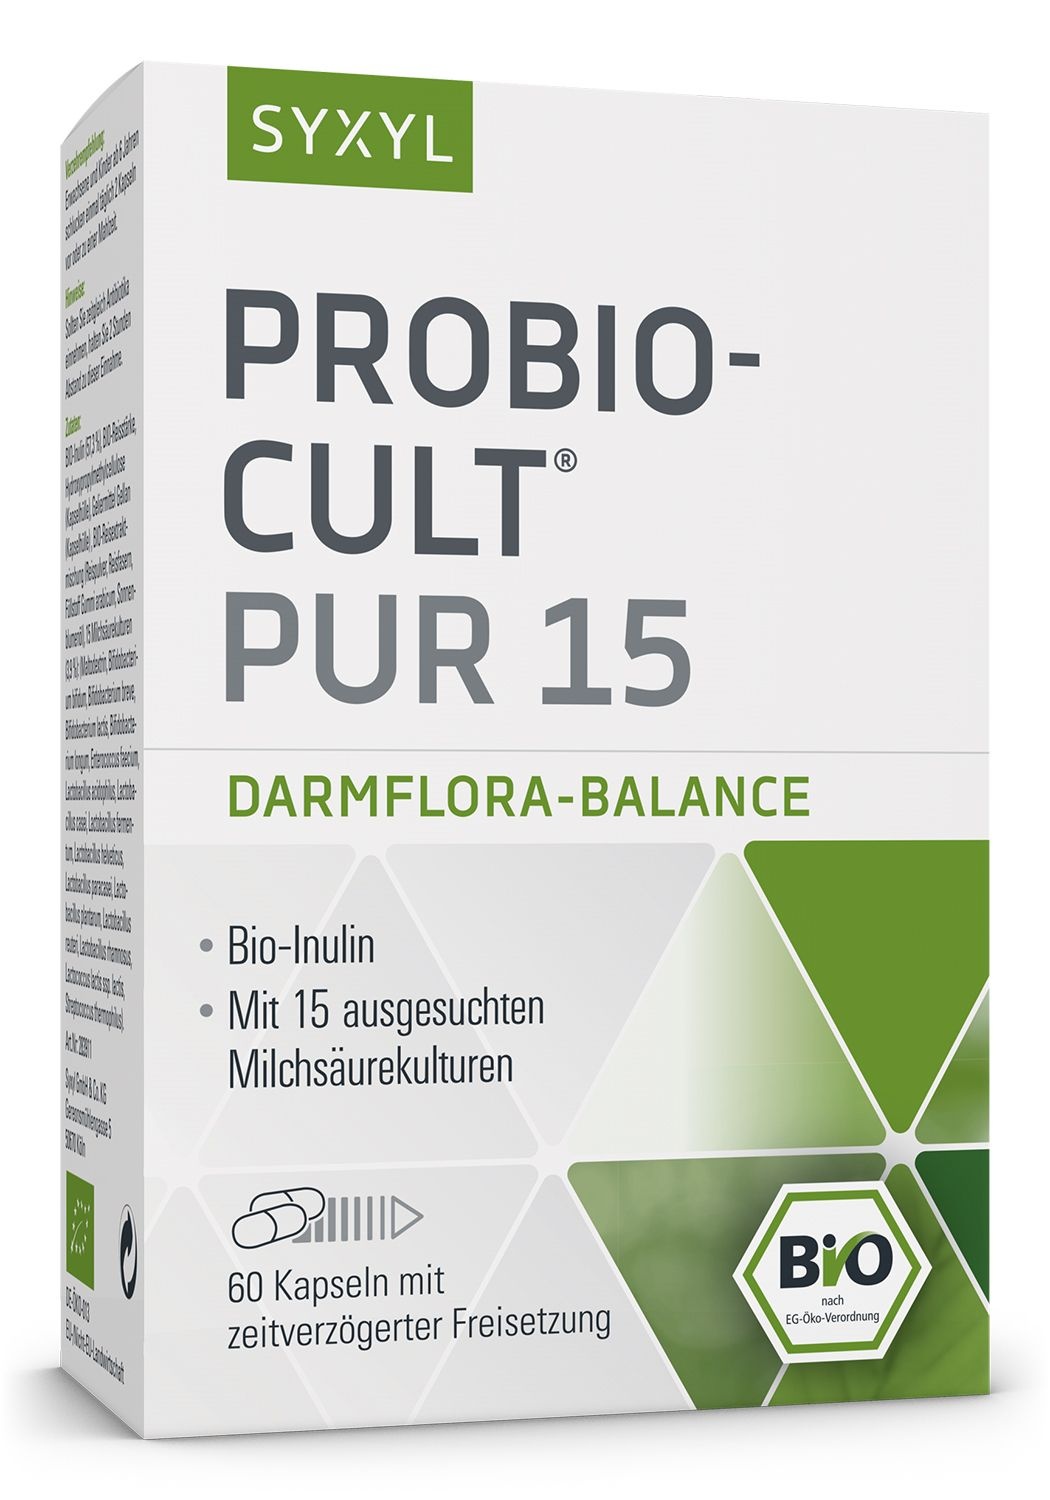 Syxyl Probio-Cult® PUR 15, denn eine stabile Darmflora braucht Vielfalt.